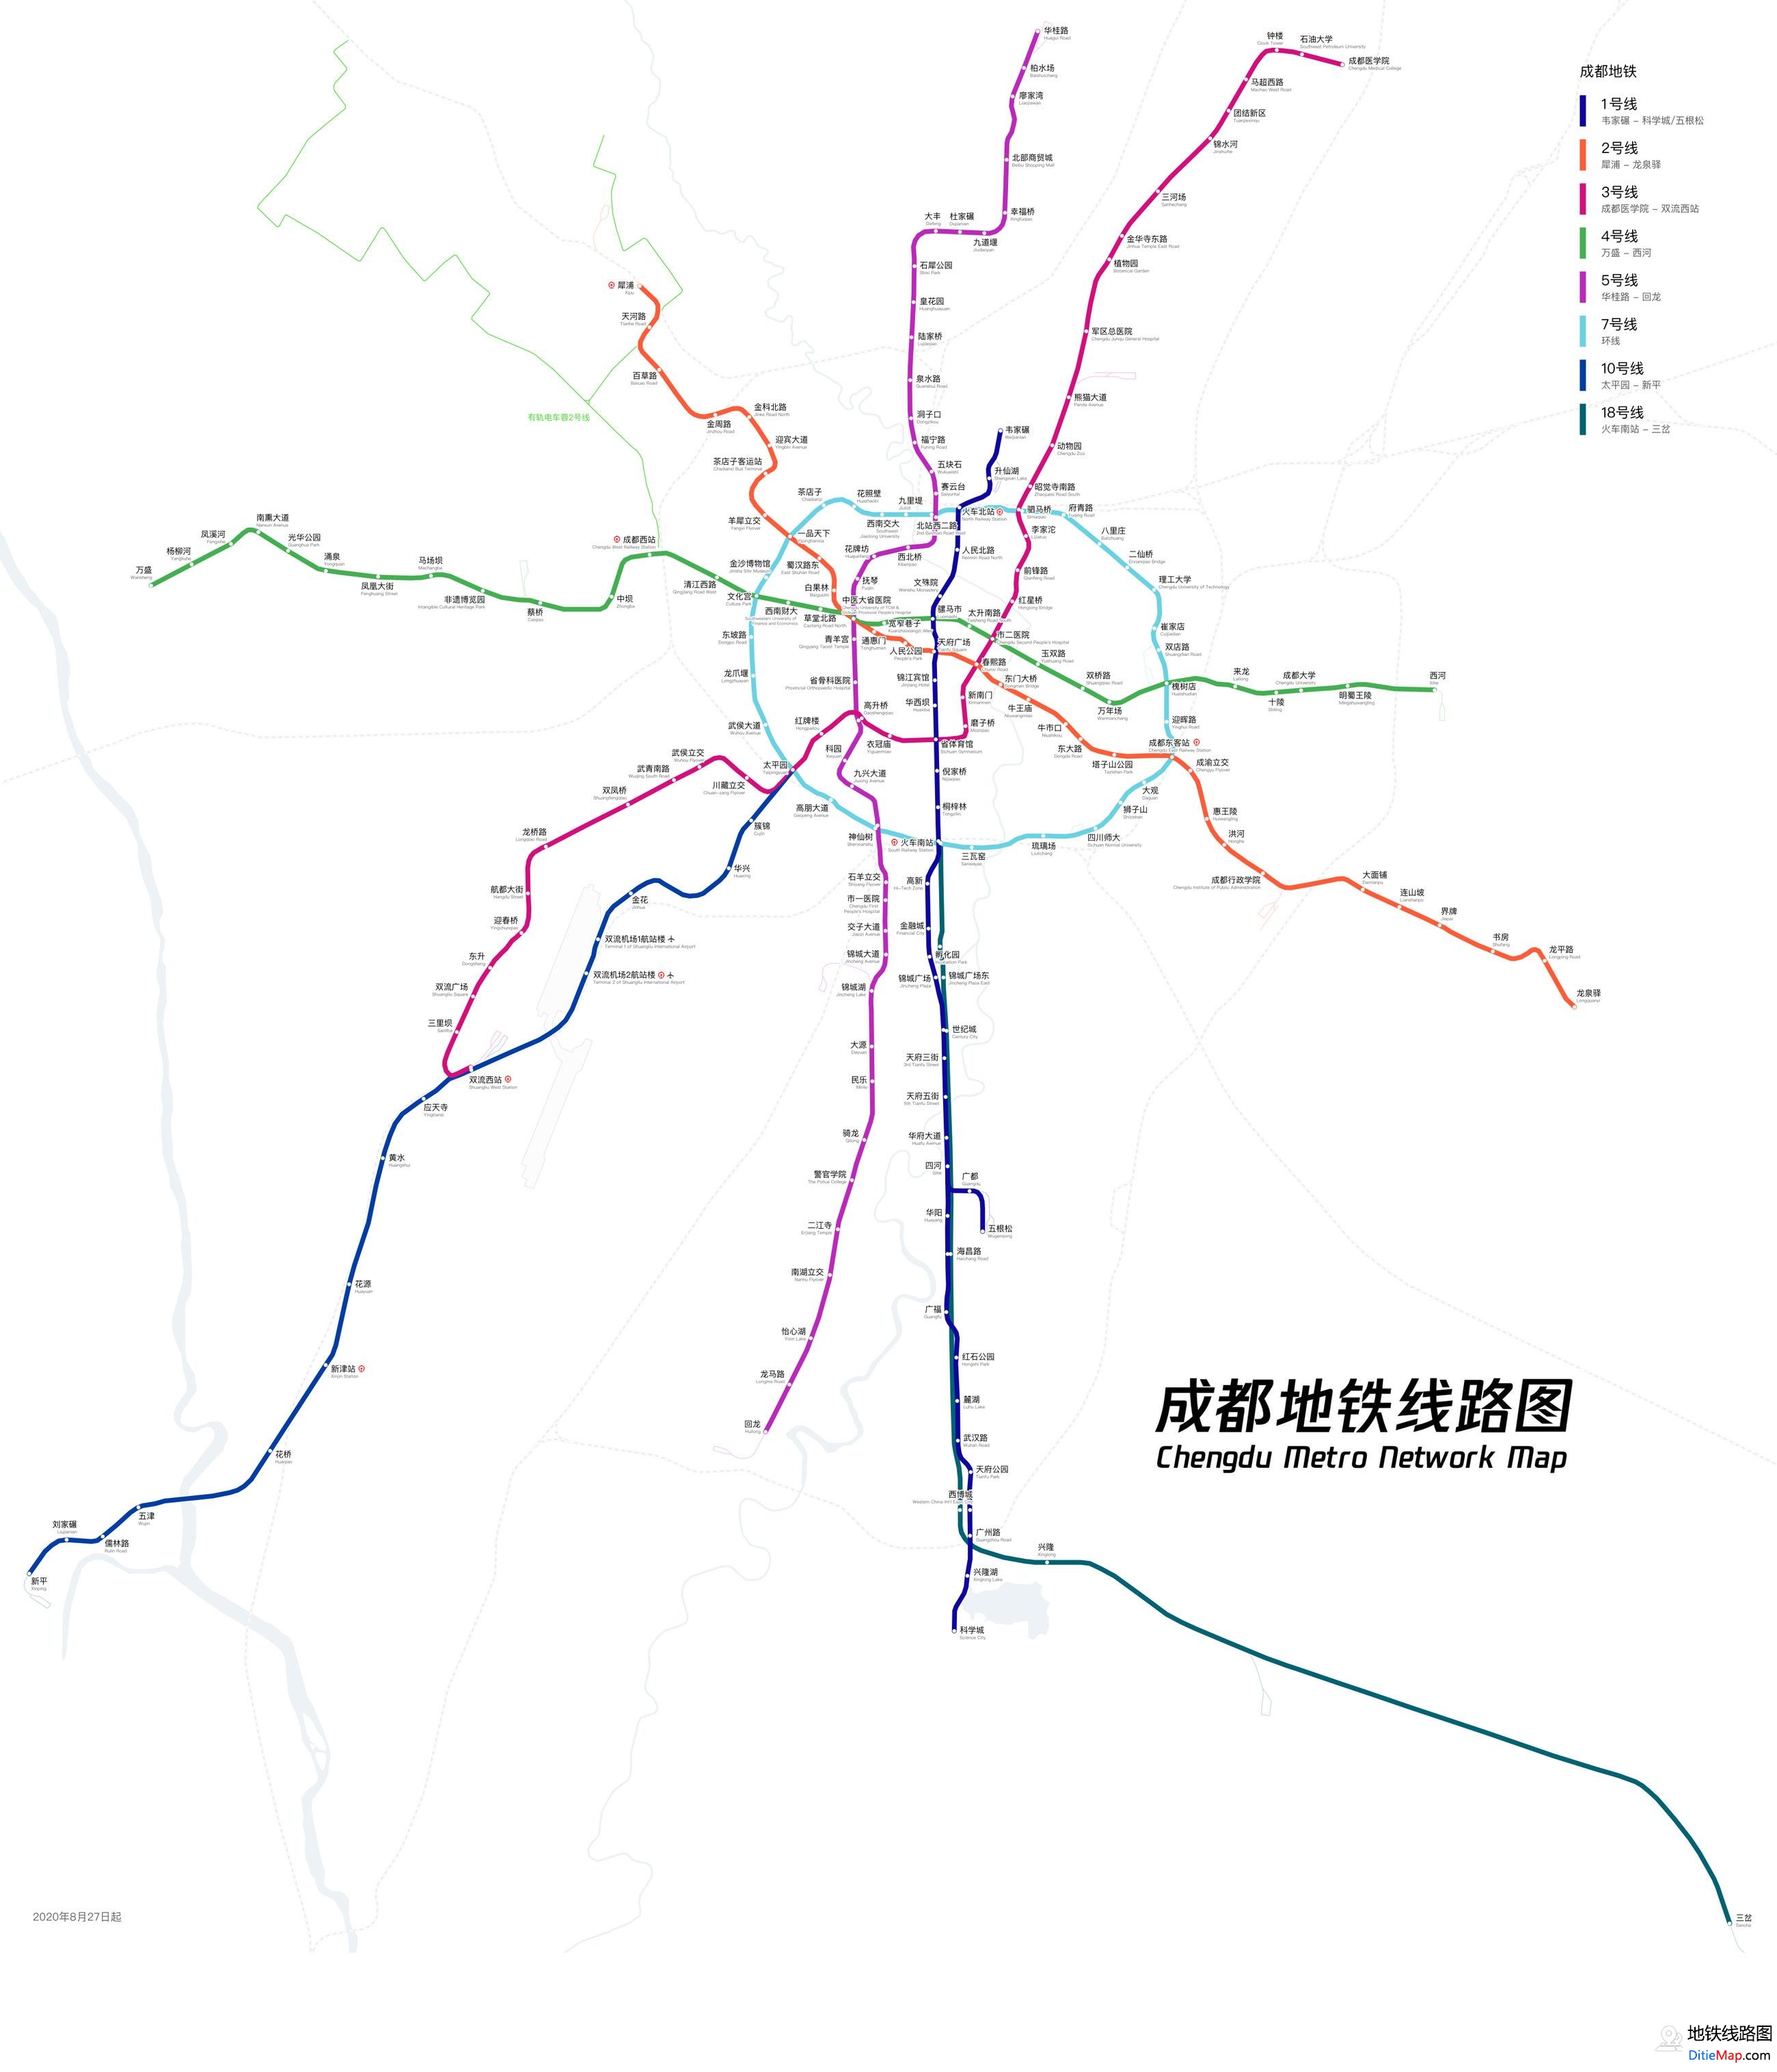 成都地铁线路图 运营时间票价站点 查询下载 成都地铁线路图 成都地铁